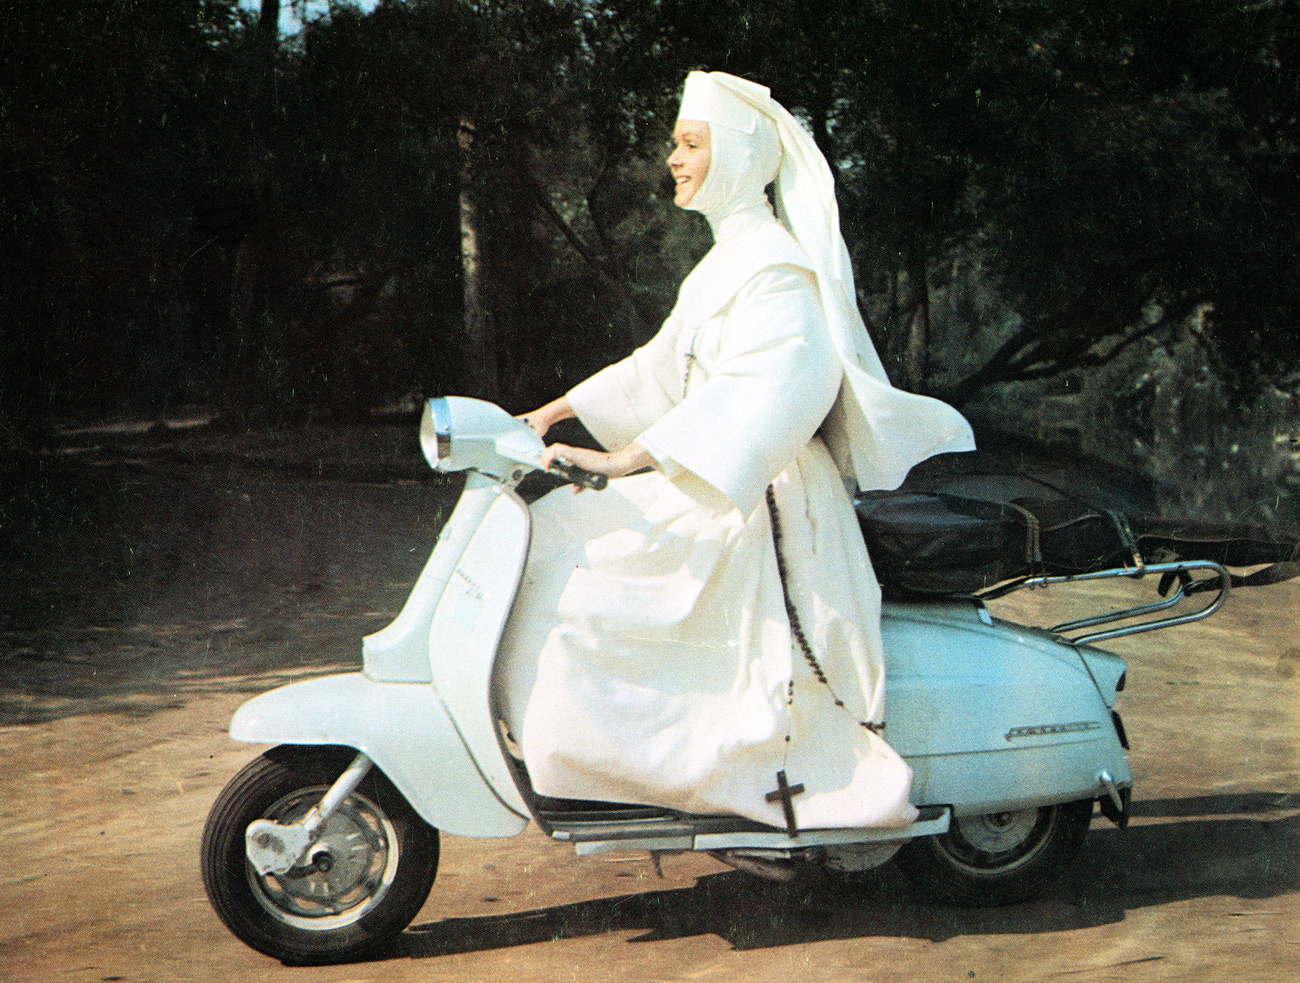 راهبة ترتدي لباسا أبيض اللون وتركب دراجة فيسبا